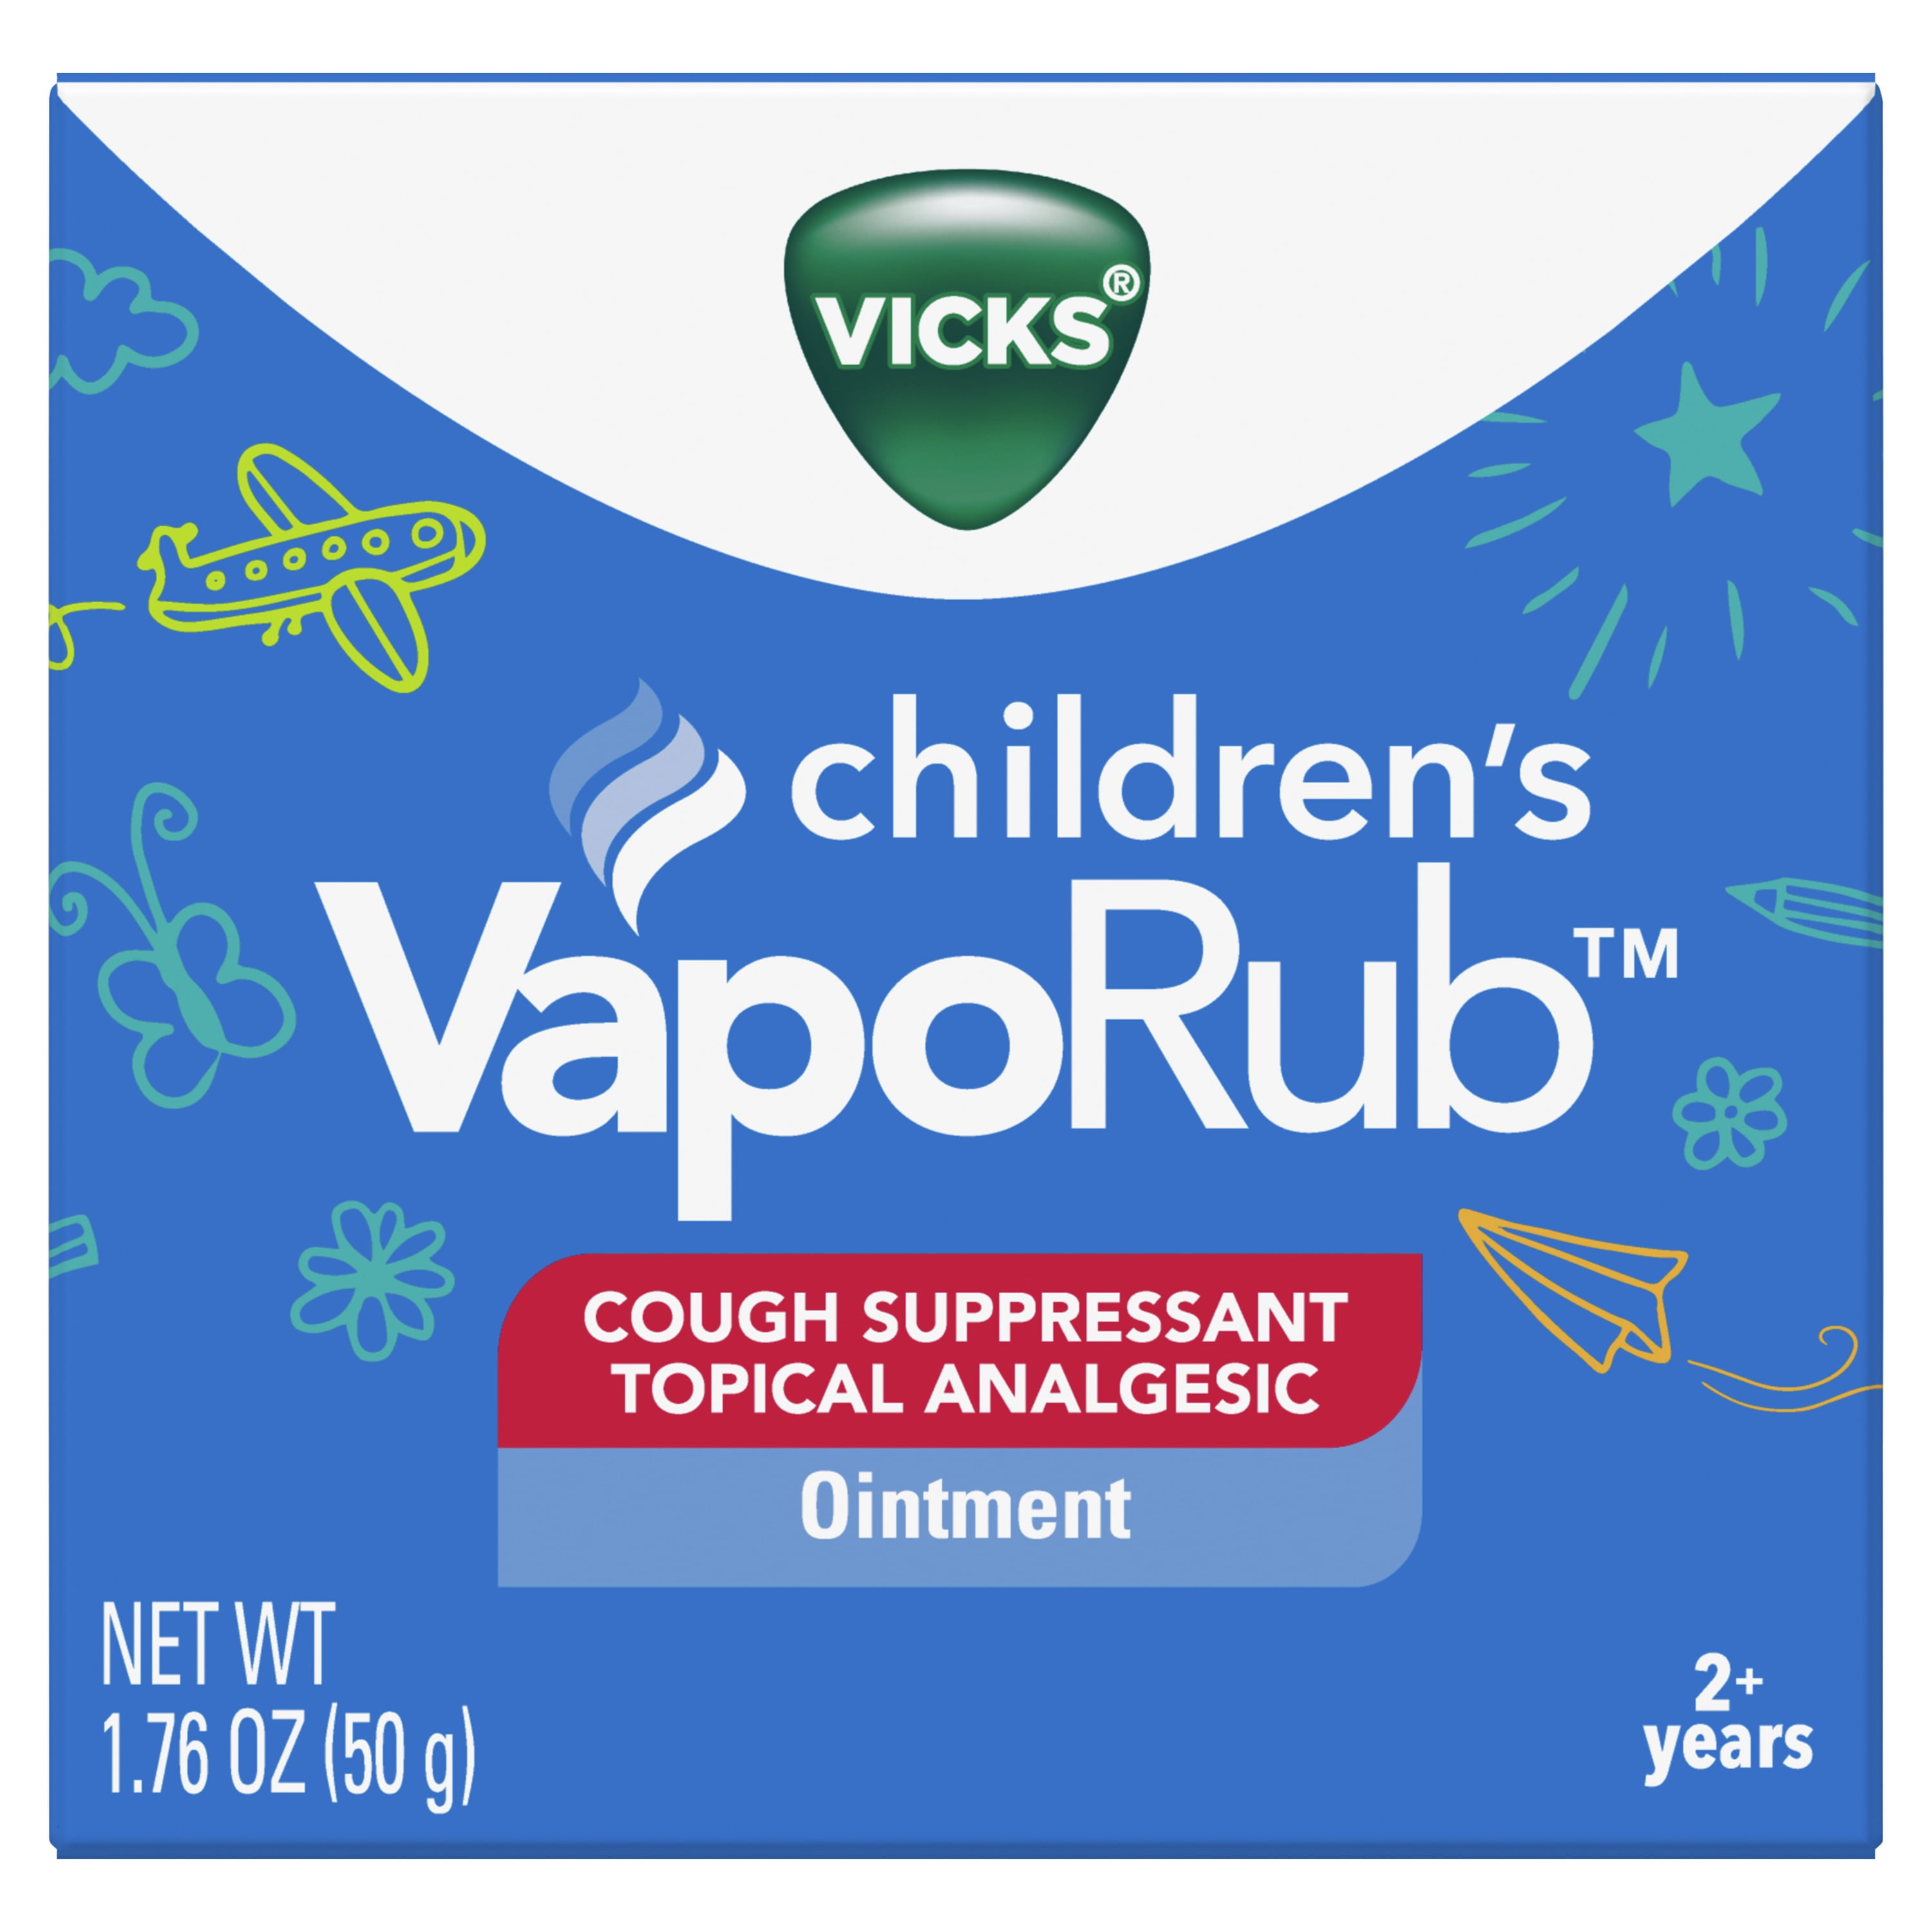 Vicks ® VapoDrops™ Cough Relief